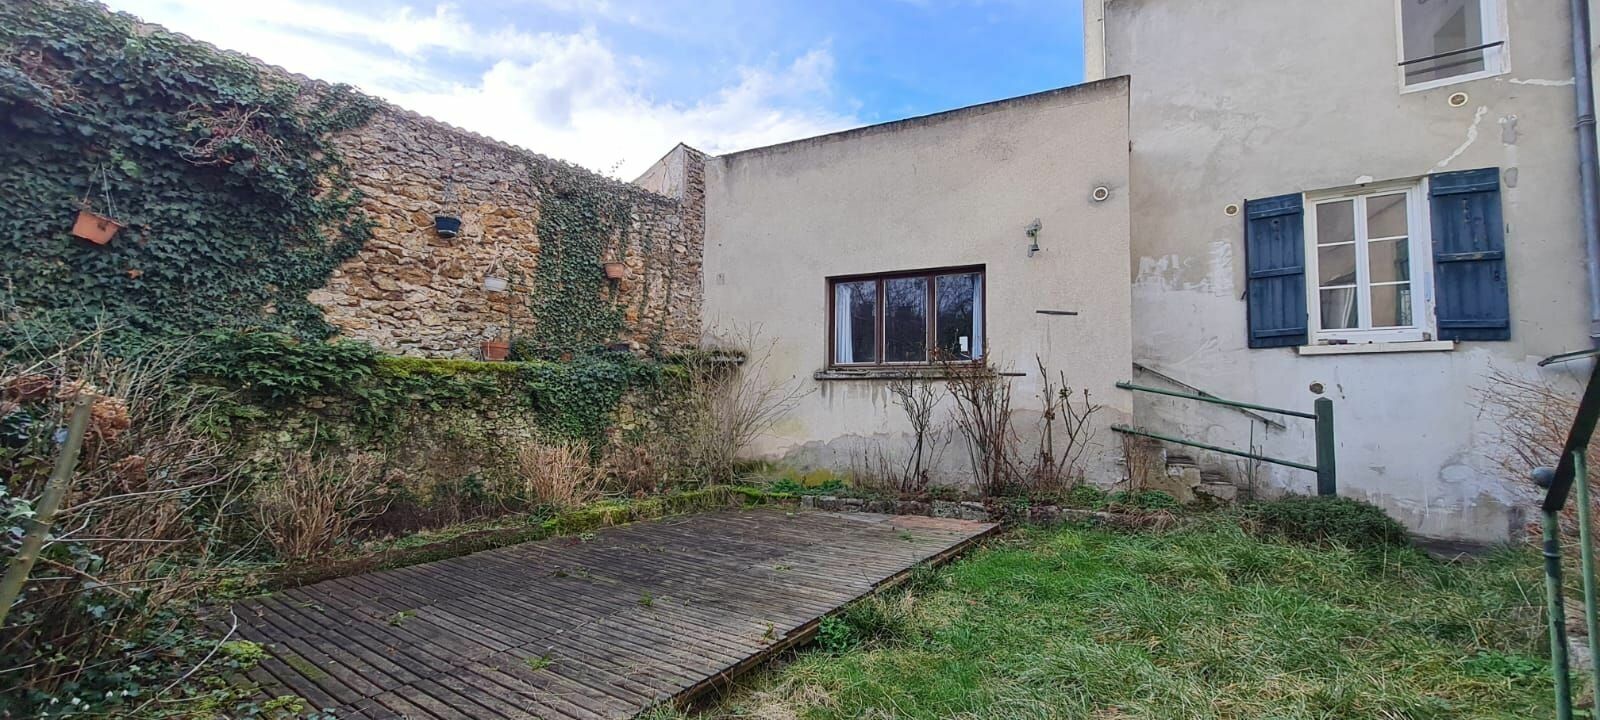 Maison à vendre 2 150m2 à Saâcy-sur-Marne vignette-5